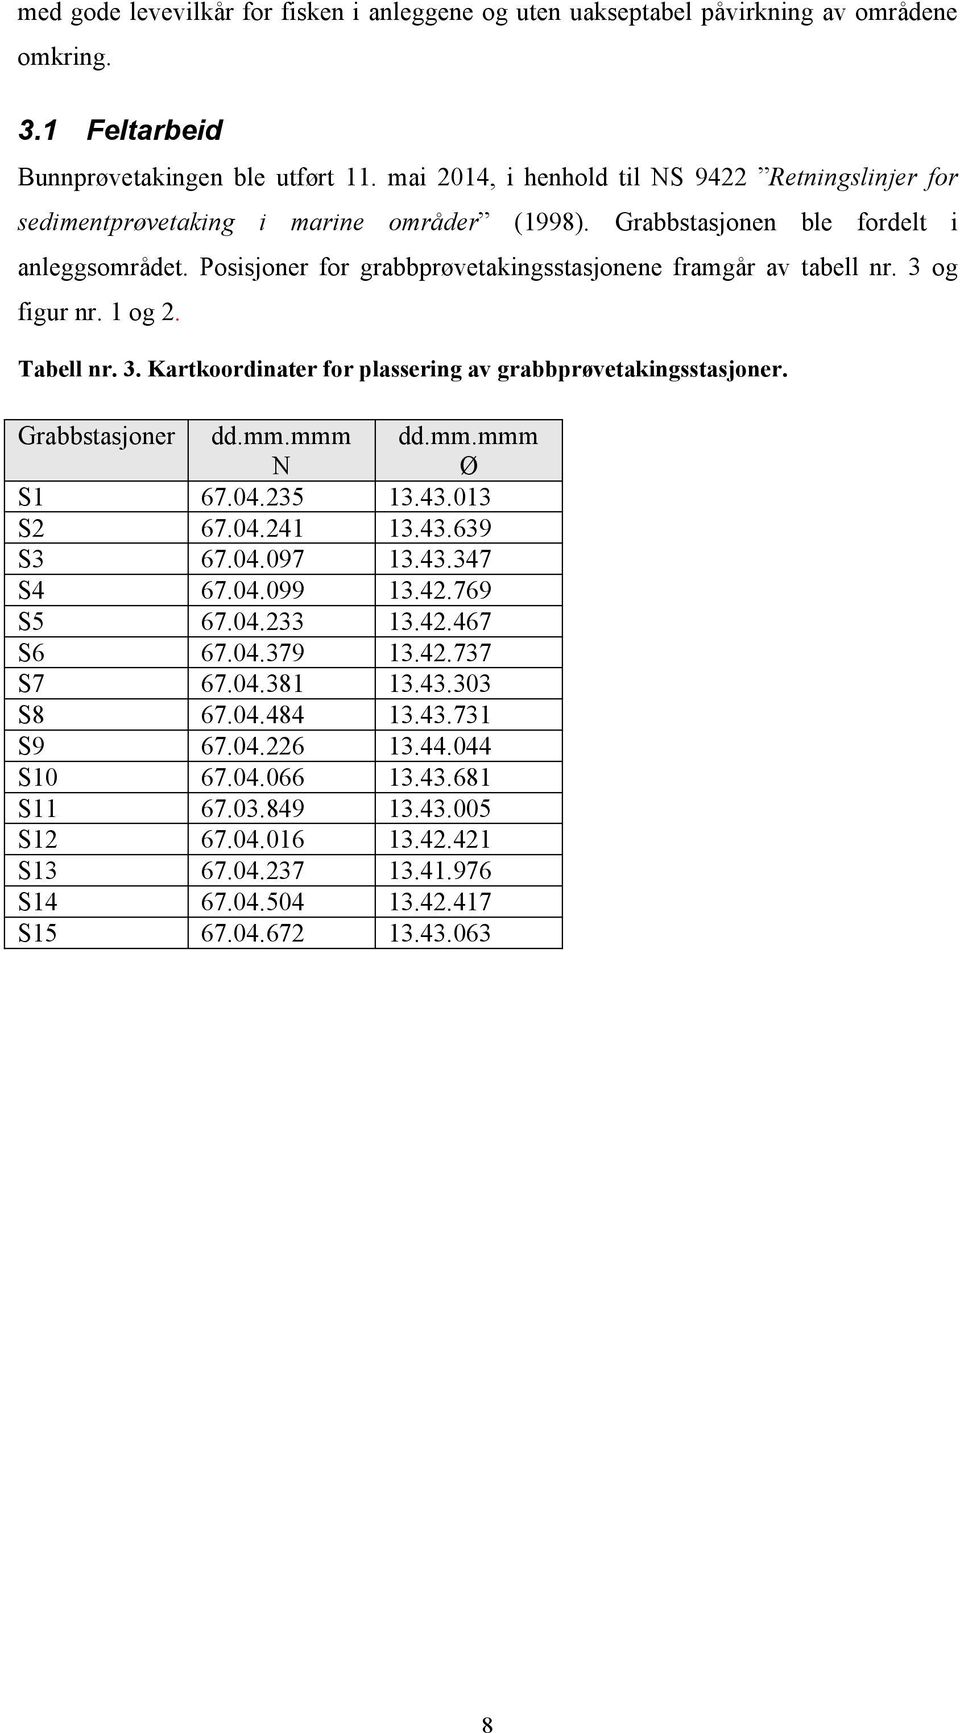 Posisjoner for grabbprøvetakingsstasjonene framgår av tabell nr. 3 og figur nr. 1 og 2. Tabell nr. 3. Kartkoordinater for plassering av grabbprøvetakingsstasjoner. Grabbstasjoner dd.mm.mmm N dd.mm.mmm Ø S1 67.